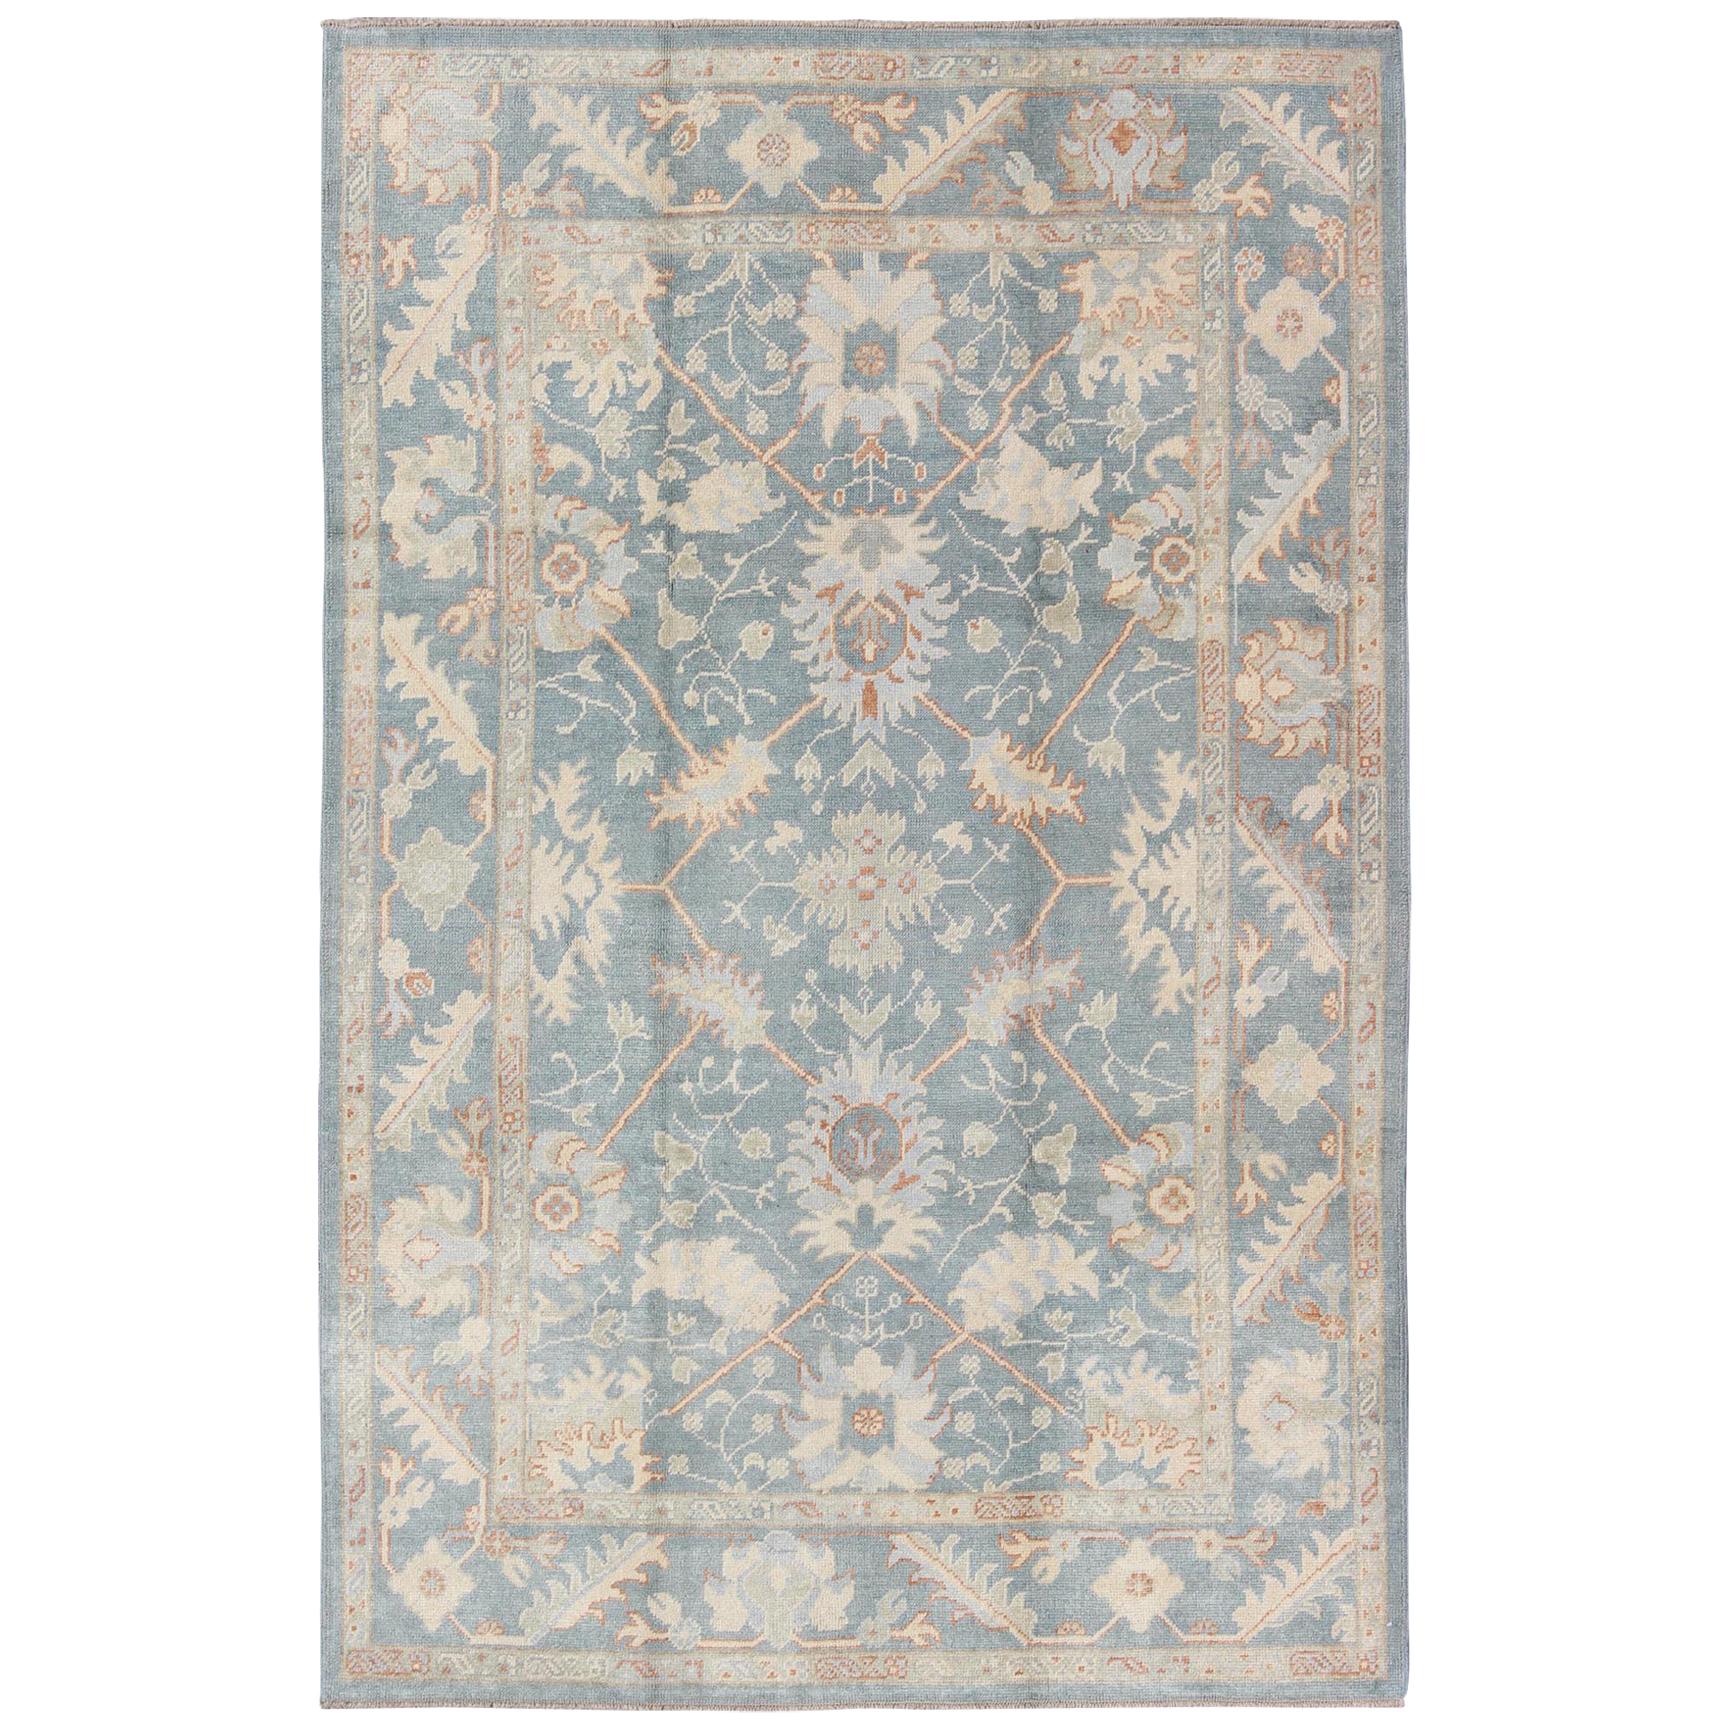 Türkischer Oushak-Teppich mit floralem Design in hellem Stahl-Blau und Korallen-Akzent